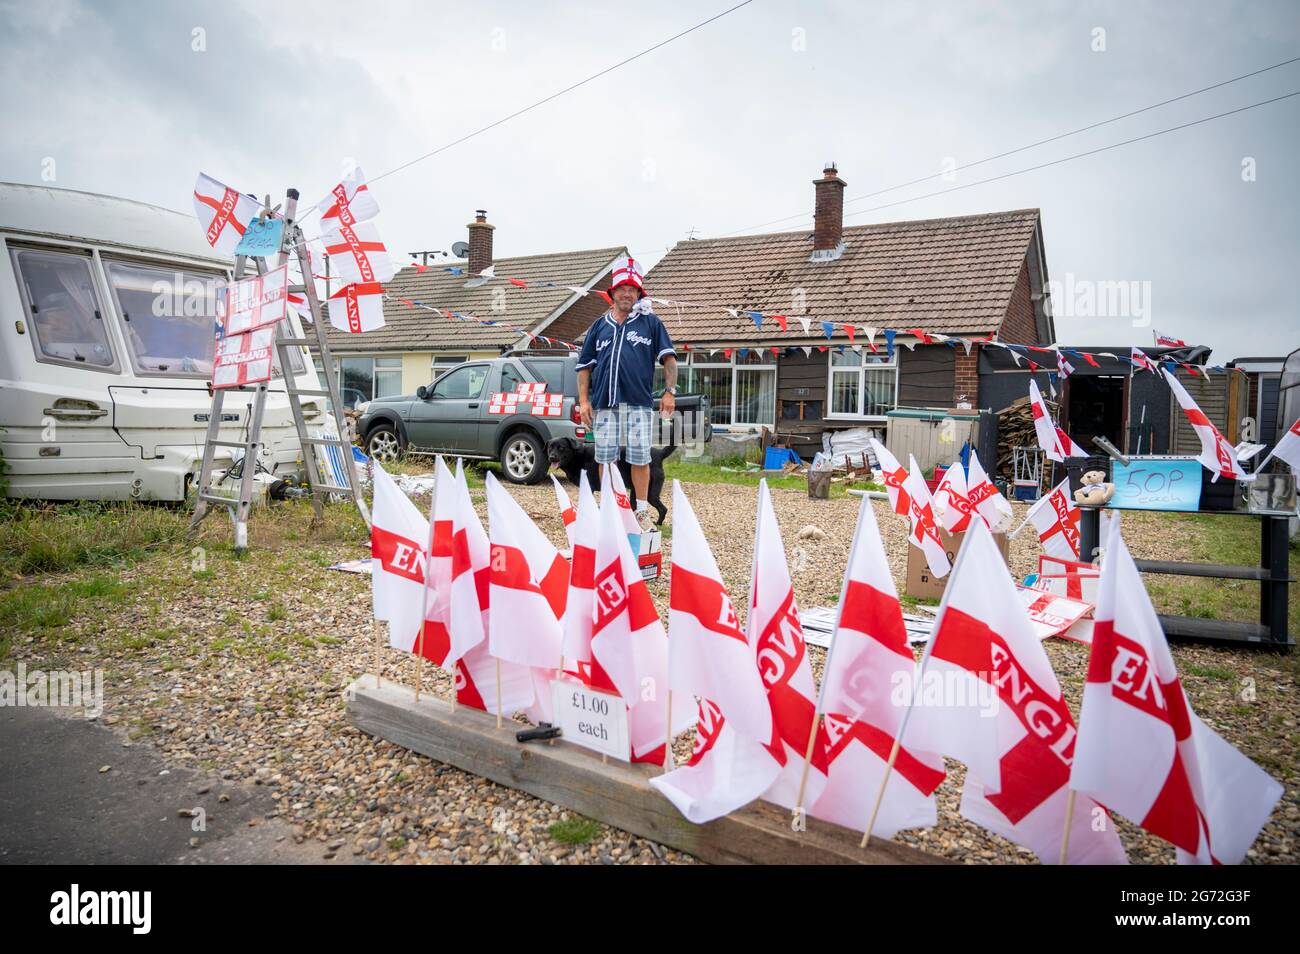 Trimingham, North Norfolk, Royaume-Uni. 10 juillet 2021. Un homme vend des drapeaux de football d'Angleterre, des chapeaux, des enseignes et d'autres souvenirs de supporters depuis son allée devant la finale des championnats d'Europe de football d'Angleterre V Italie à Wembley. Crédit : Julian Eales/Alay Live News Banque D'Images